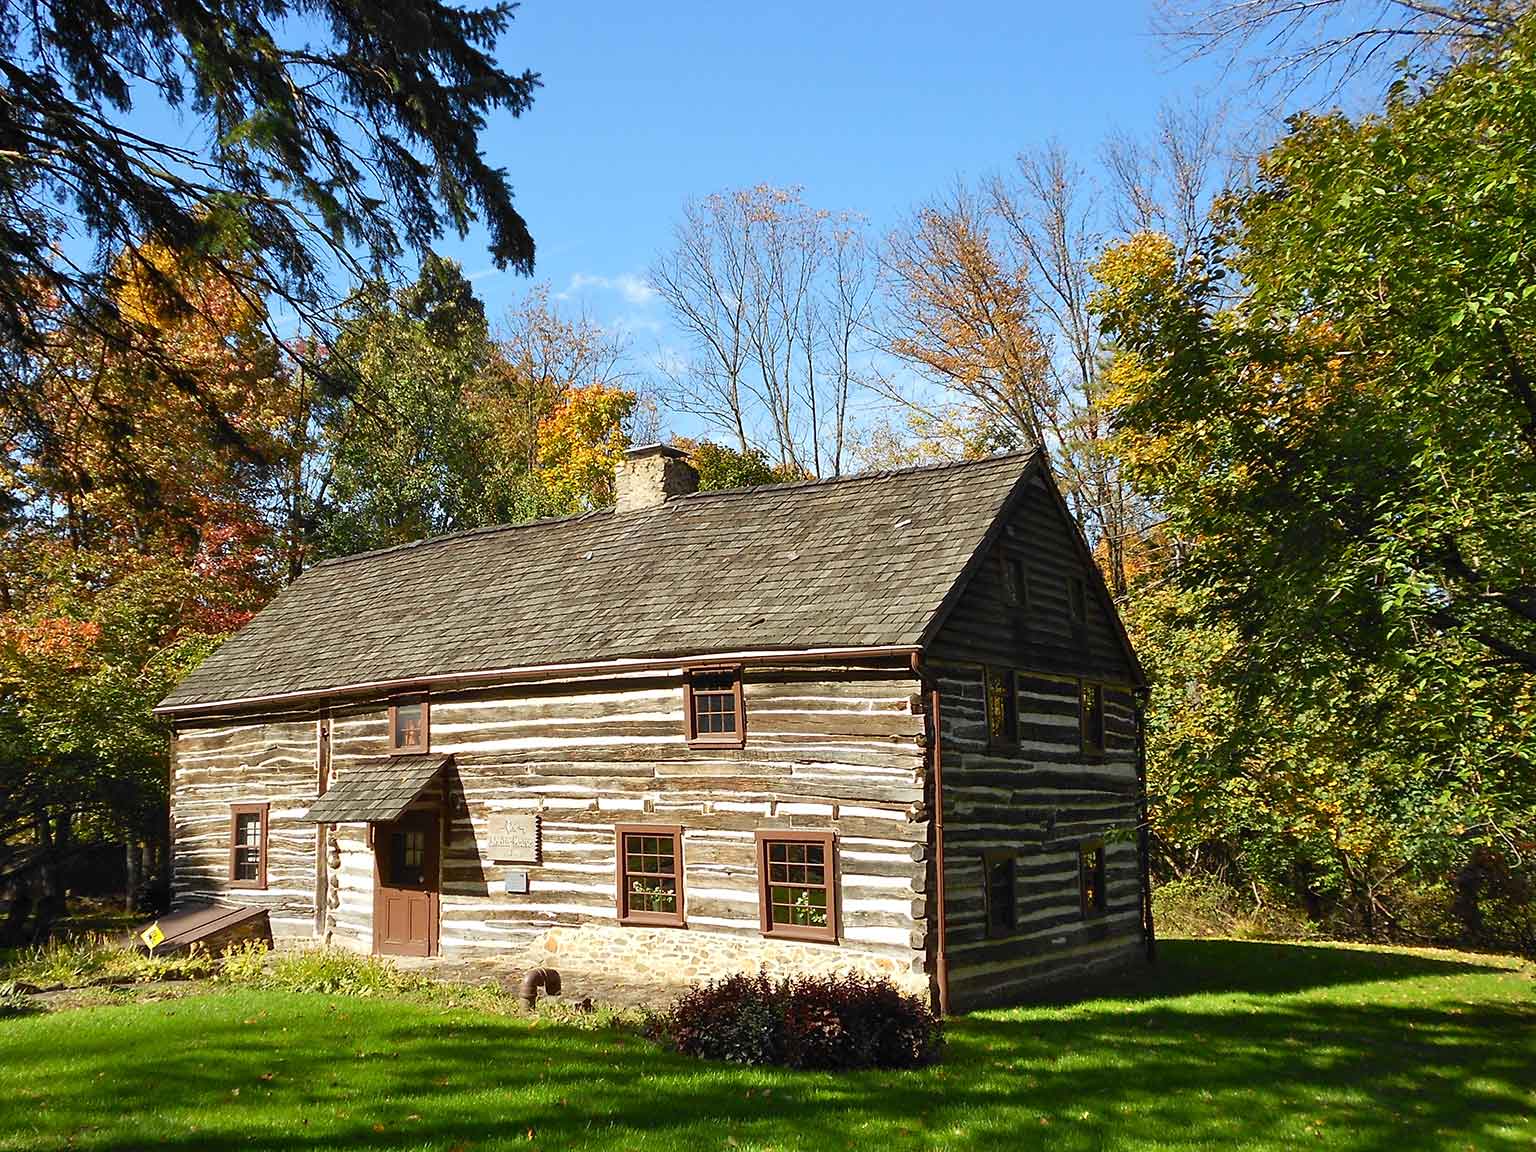 Toevluchtshuis in Emmaus, Pennsylvania, in 1734 gebouwd door de Pennsylvania Dutch